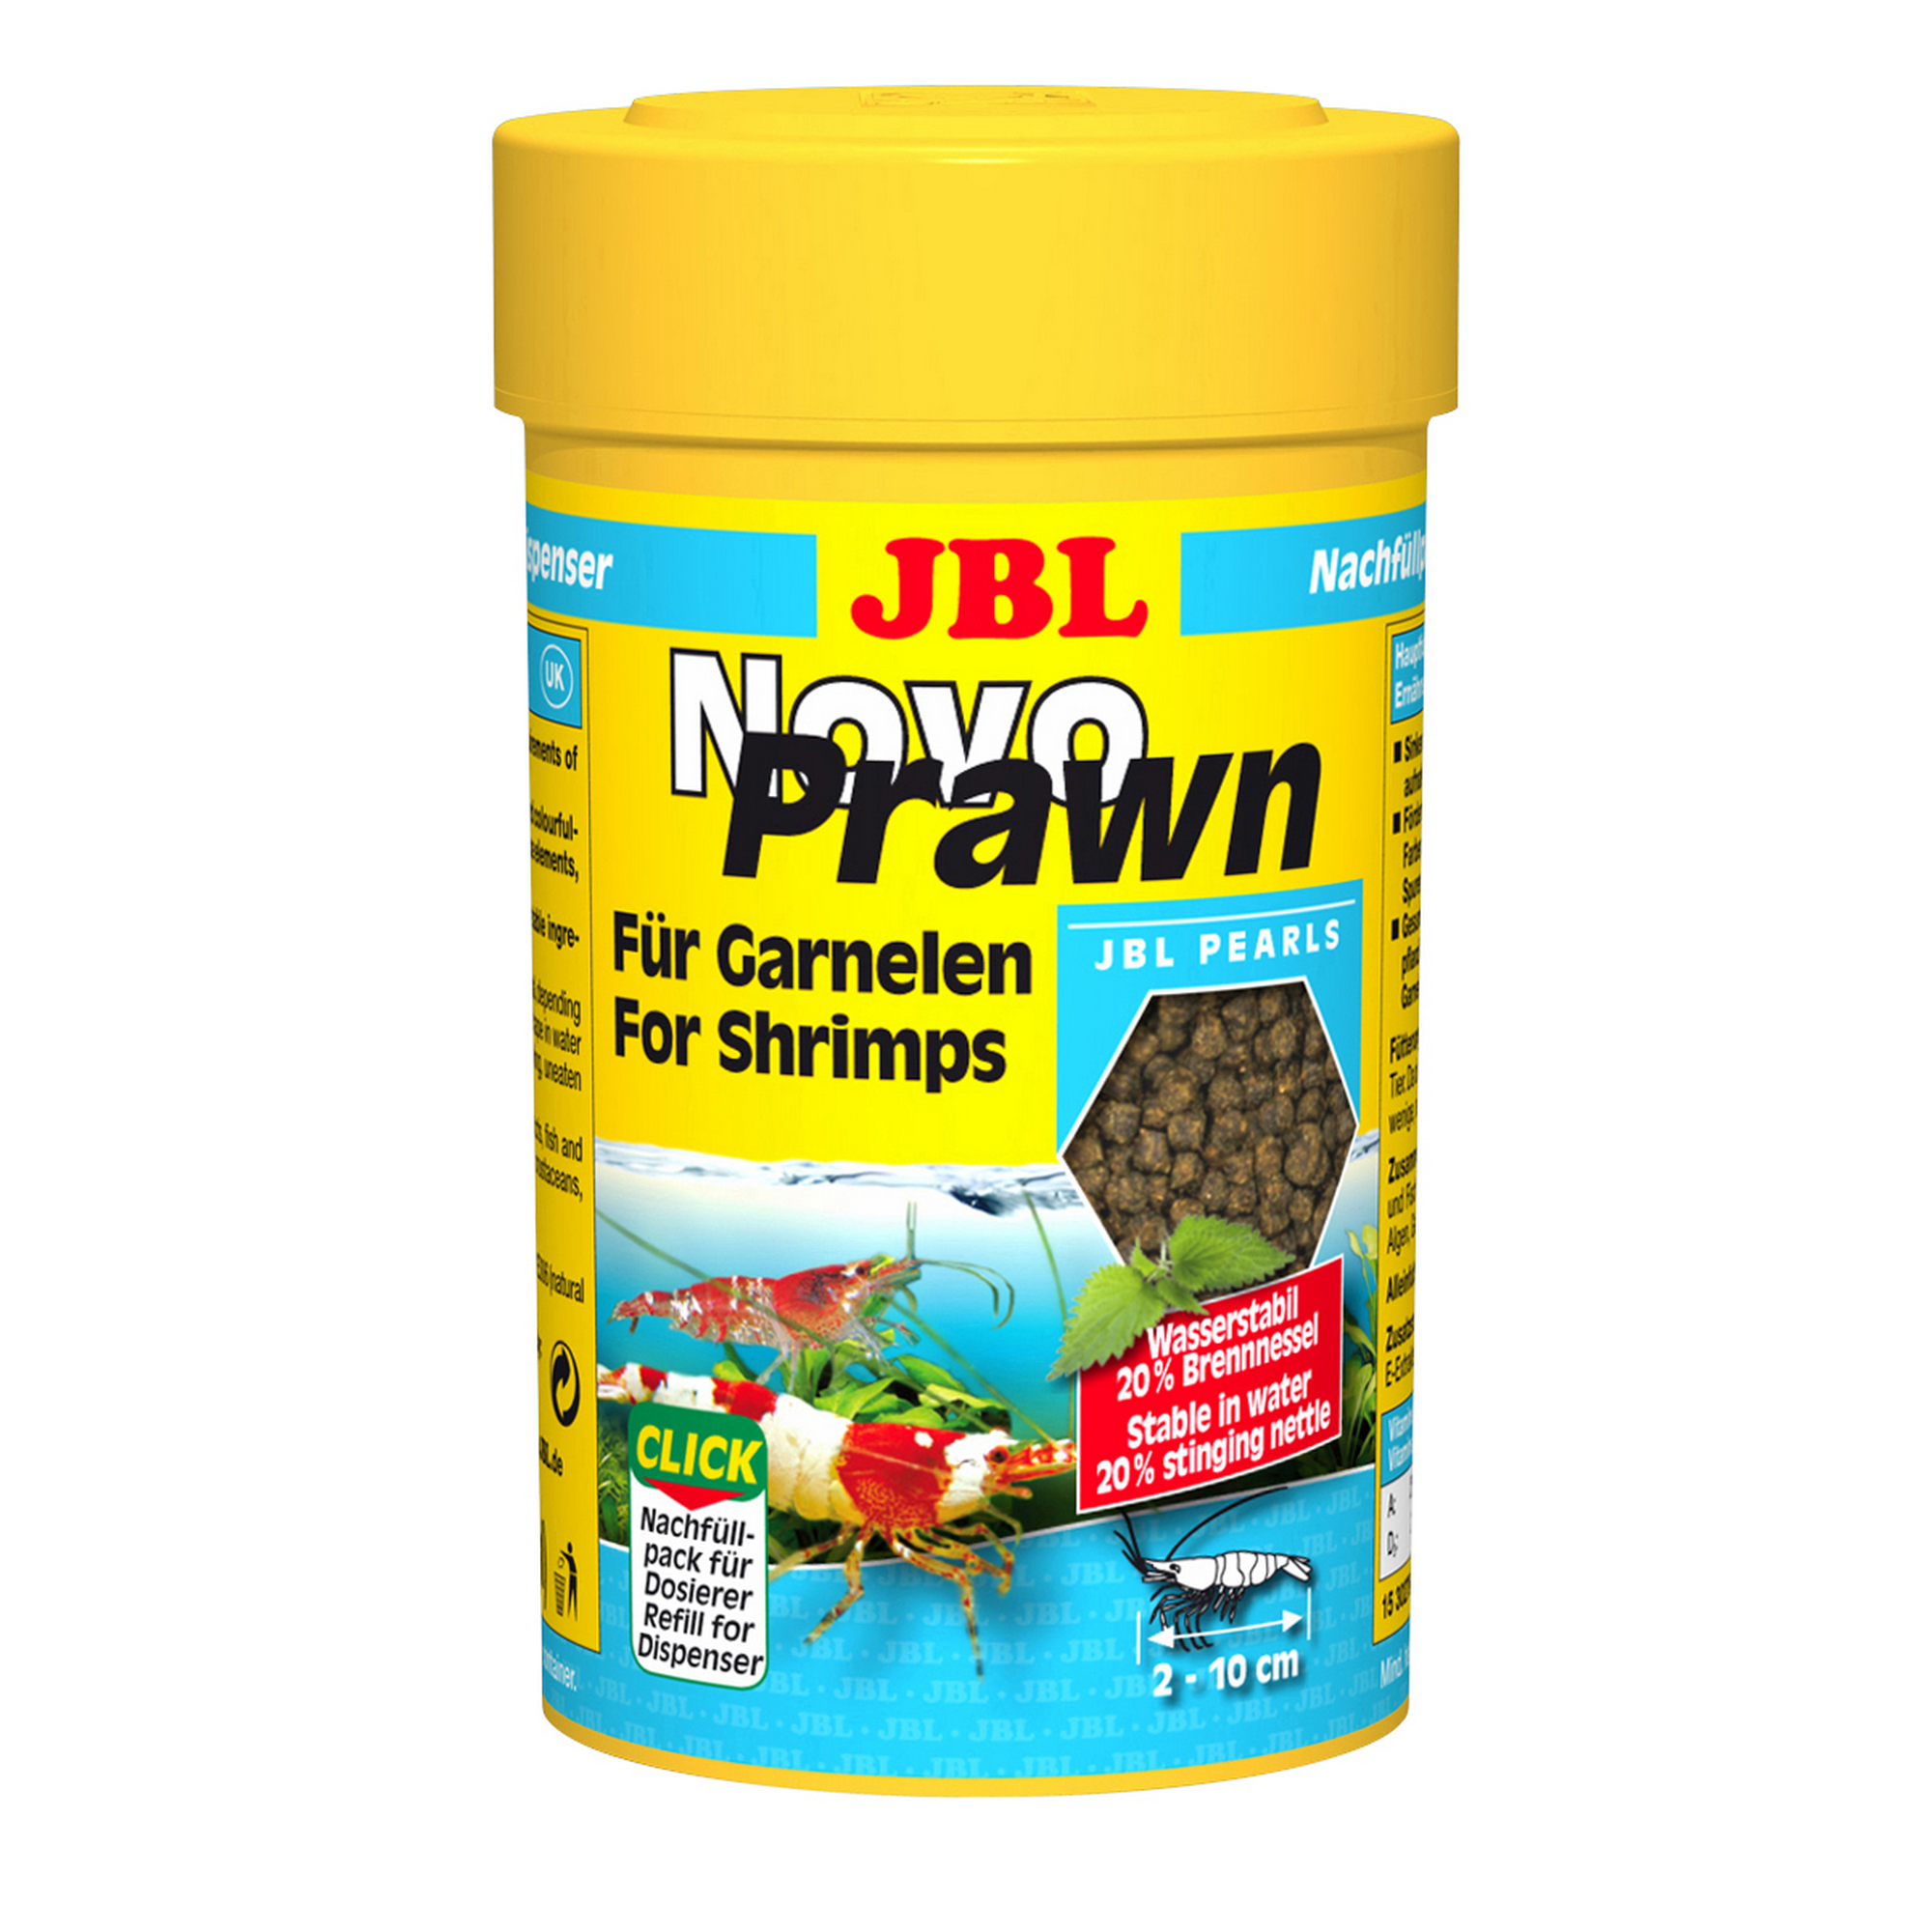 Novo Prawn Für Garnelen 100 ml + product picture